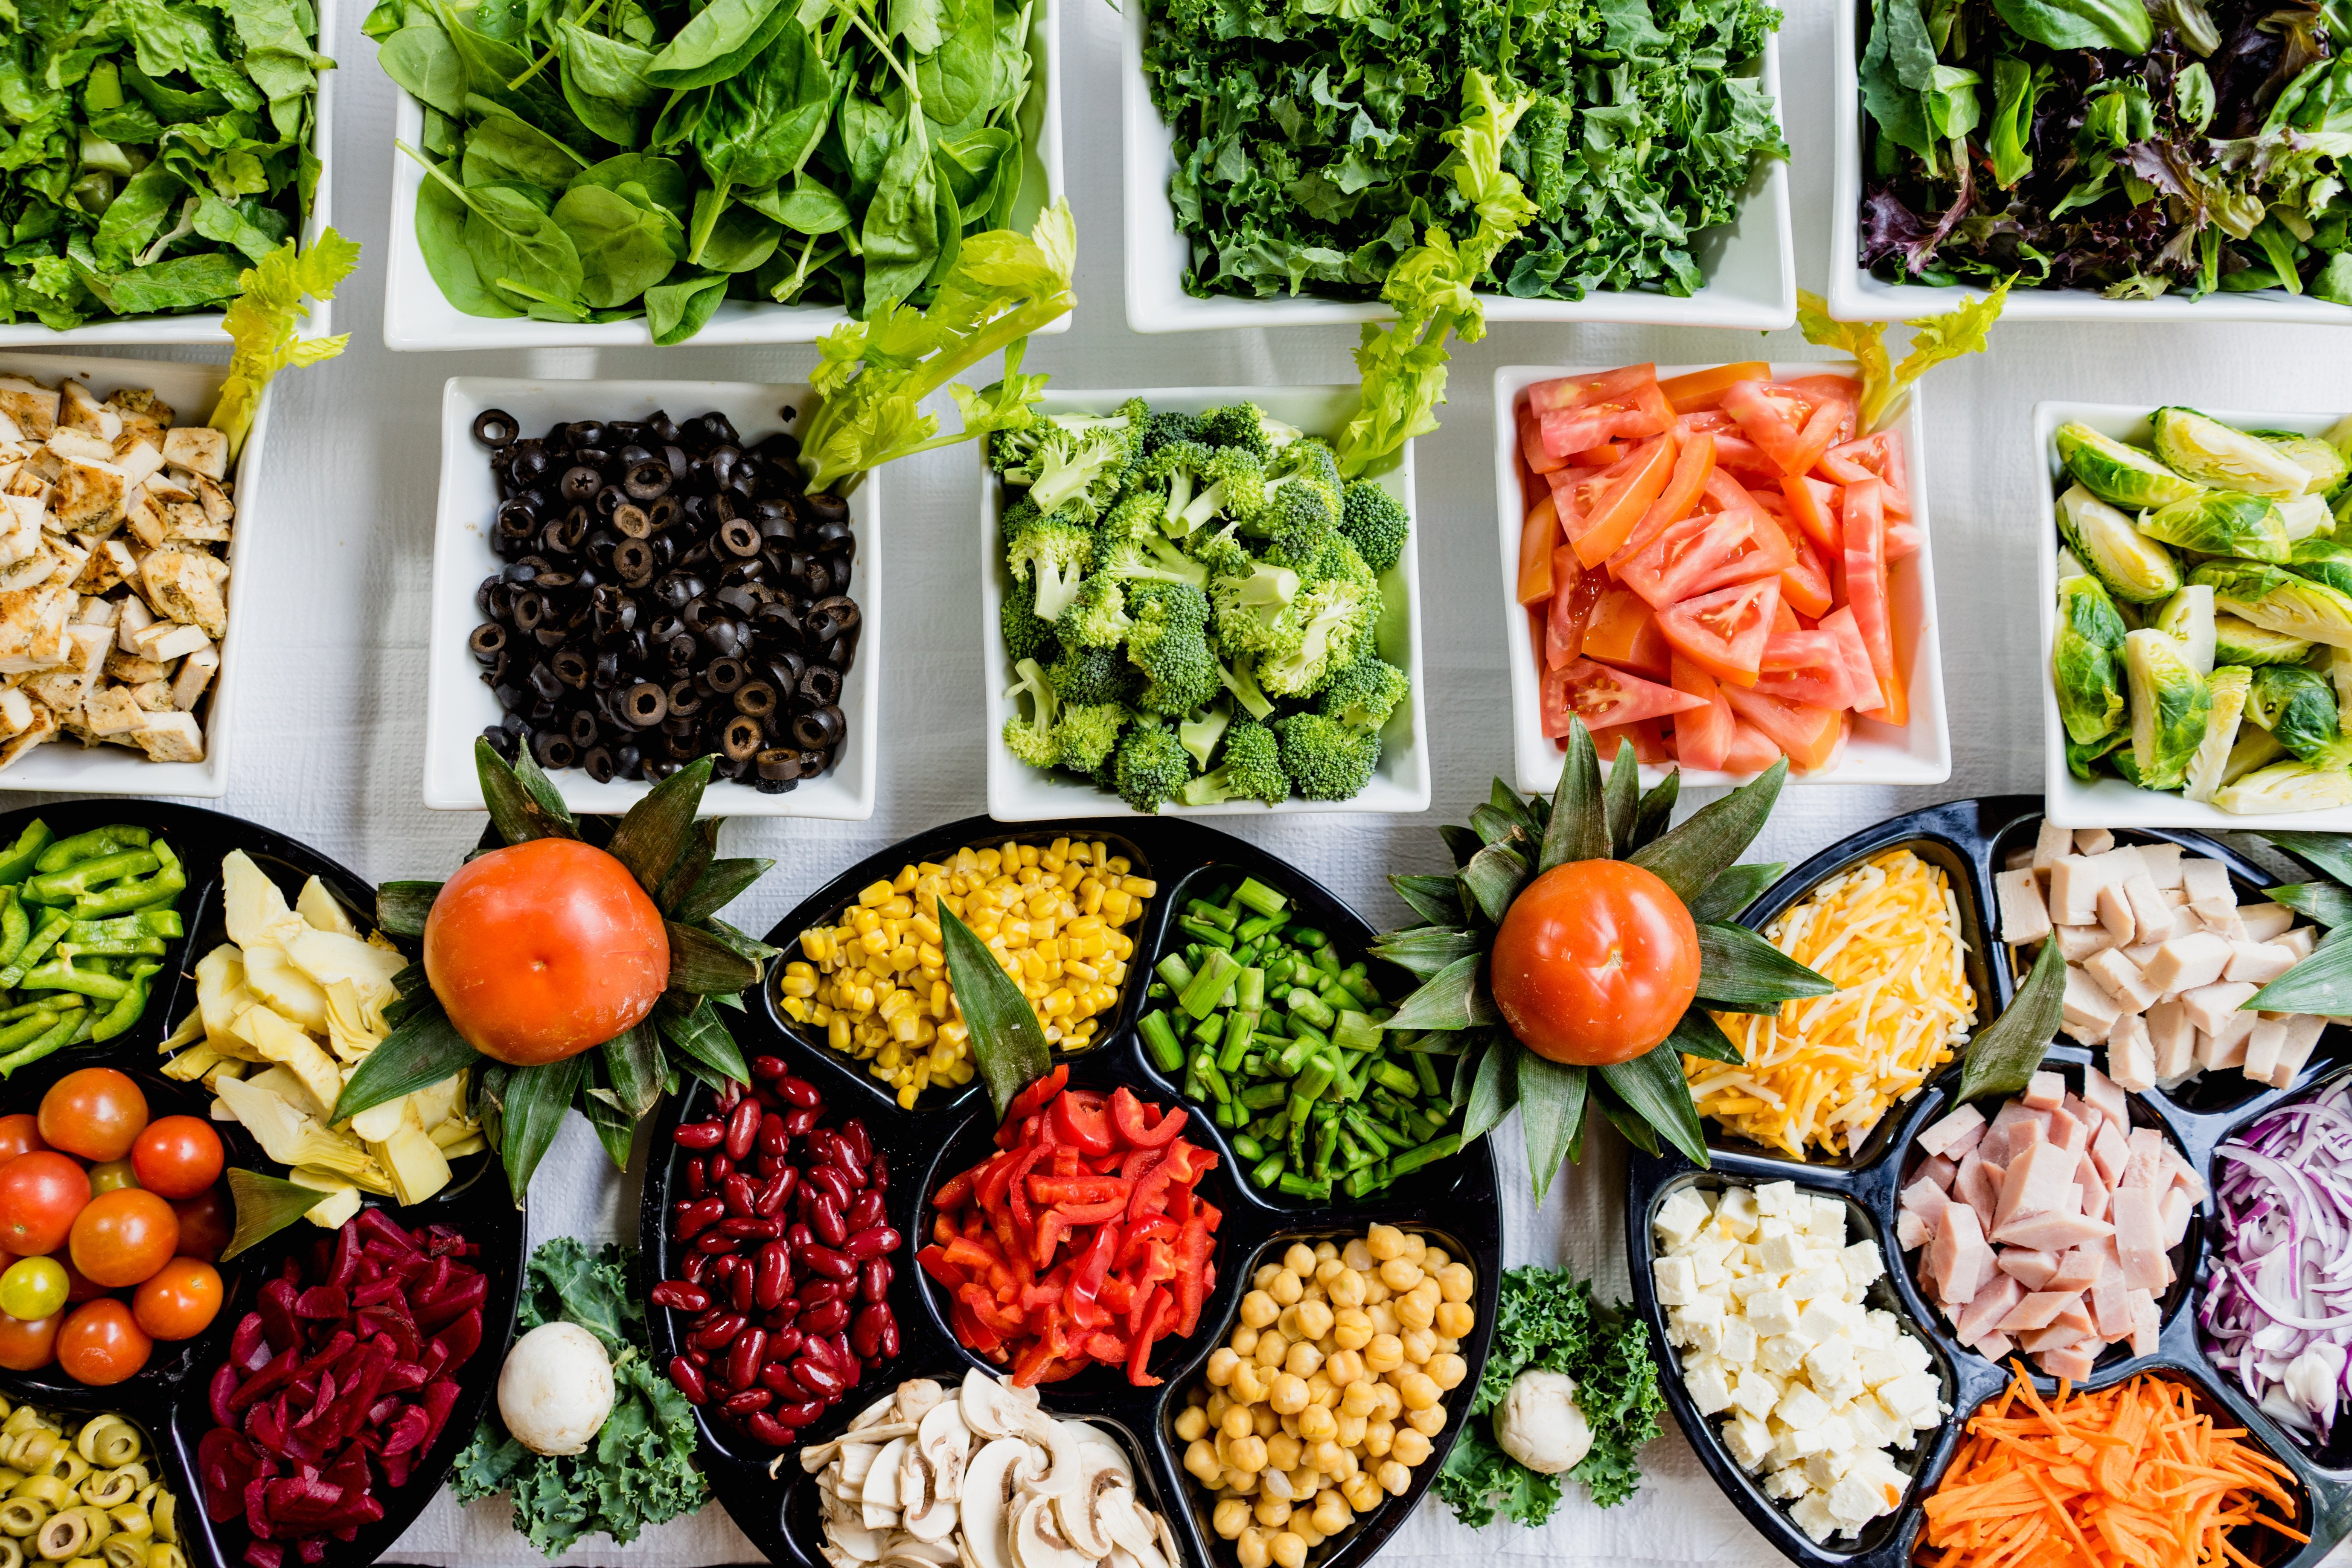 Inclou aquests 5 aliments a la dieta per millorar la salut i prevenir malalties